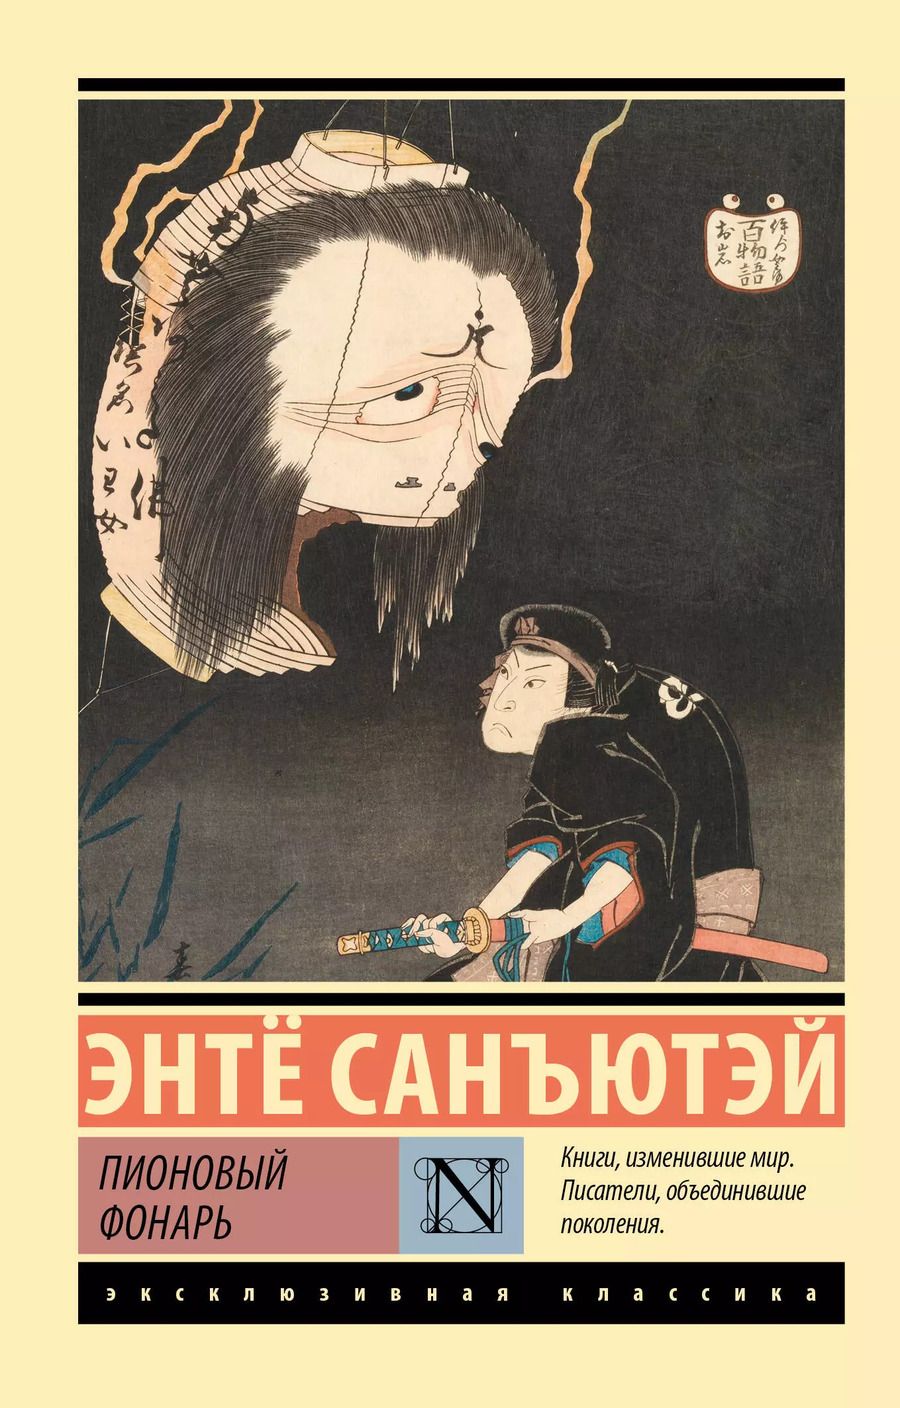 Обложка книги "Пионовый фонарь"